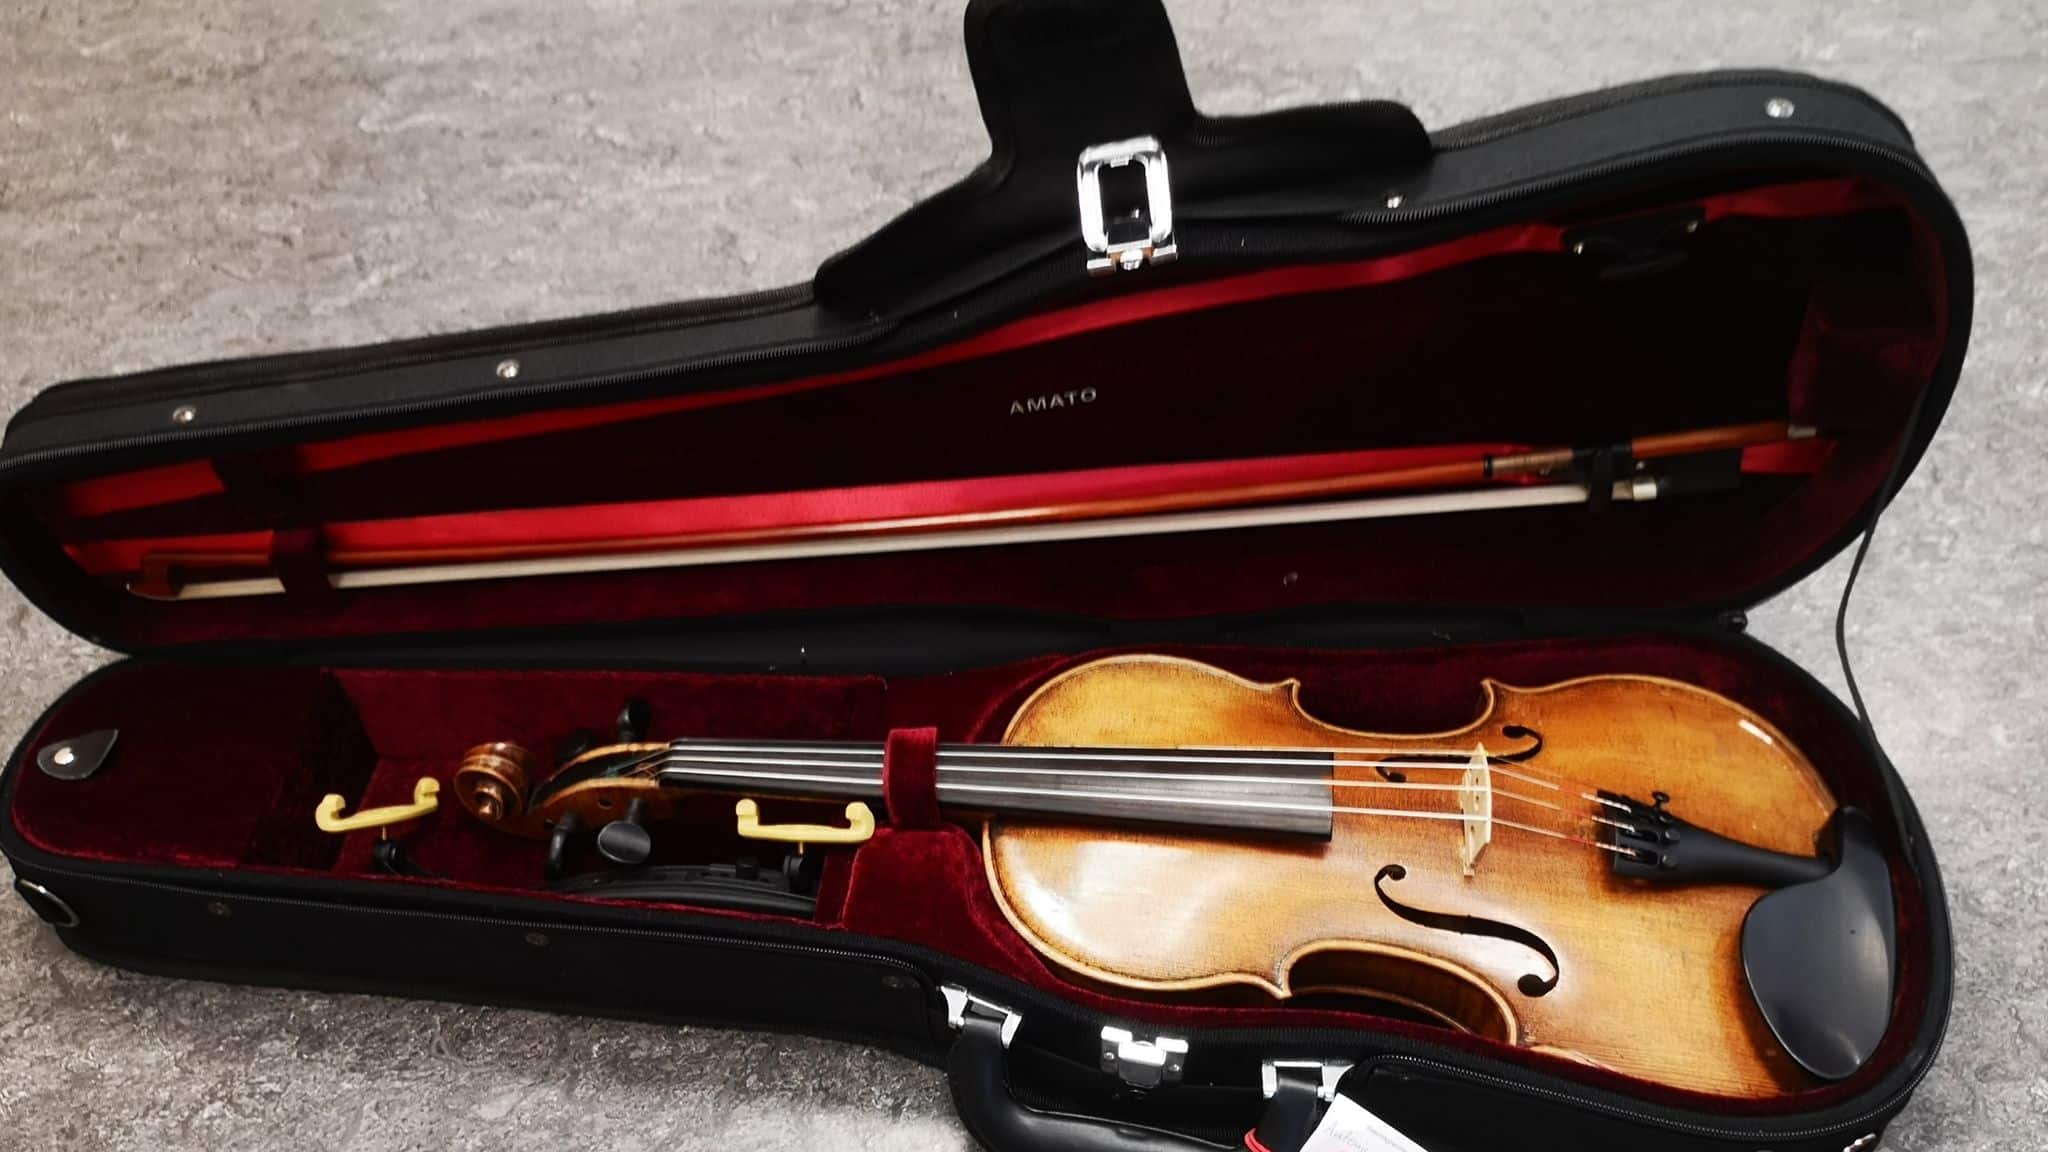 Geige sucht Besitzer: Unbekannter vergisst wertvolles Instrument in Zug